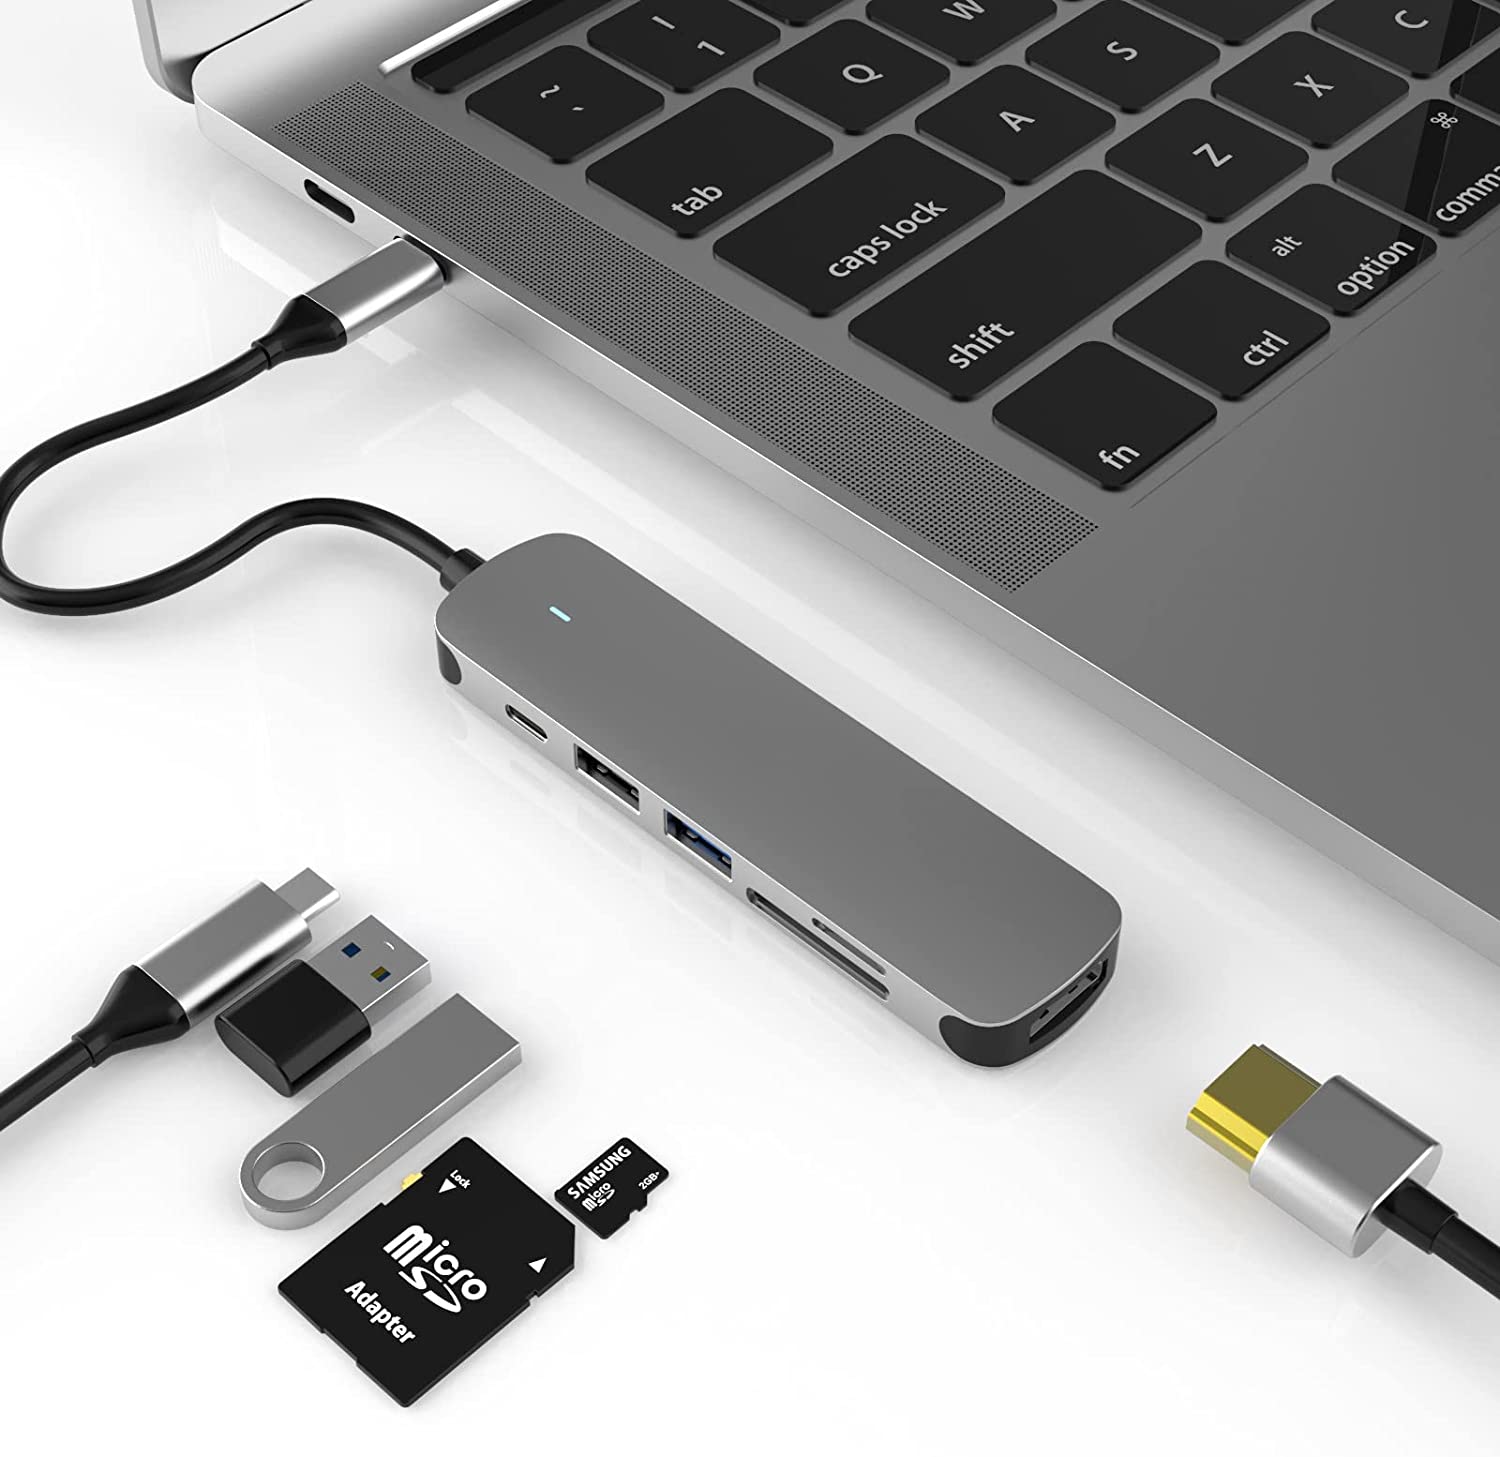 TwiHill USB C hub 3.0, é um USB Type-C Multi Port Docking Station, 4K HDMI, USB 3.0, USB 2.0 Port, 2 USB2.0, SD/TF Card Readers para MacBook Pro-para PCSite oficial de vendas da TwiHill